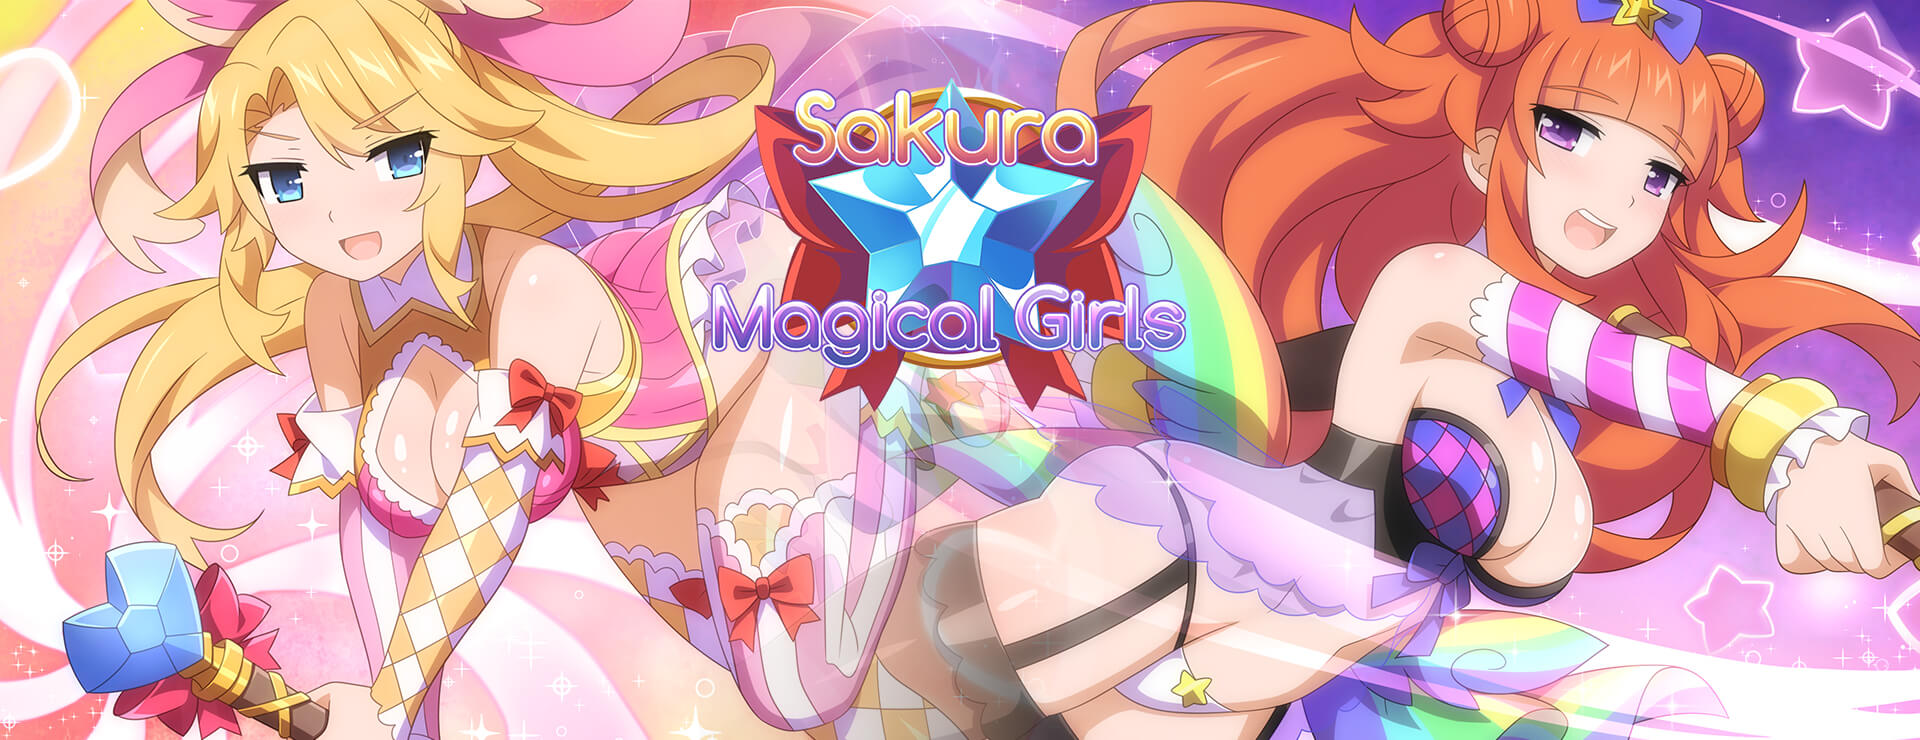 Sakura Magical Girls - Roman Visuel Jeu